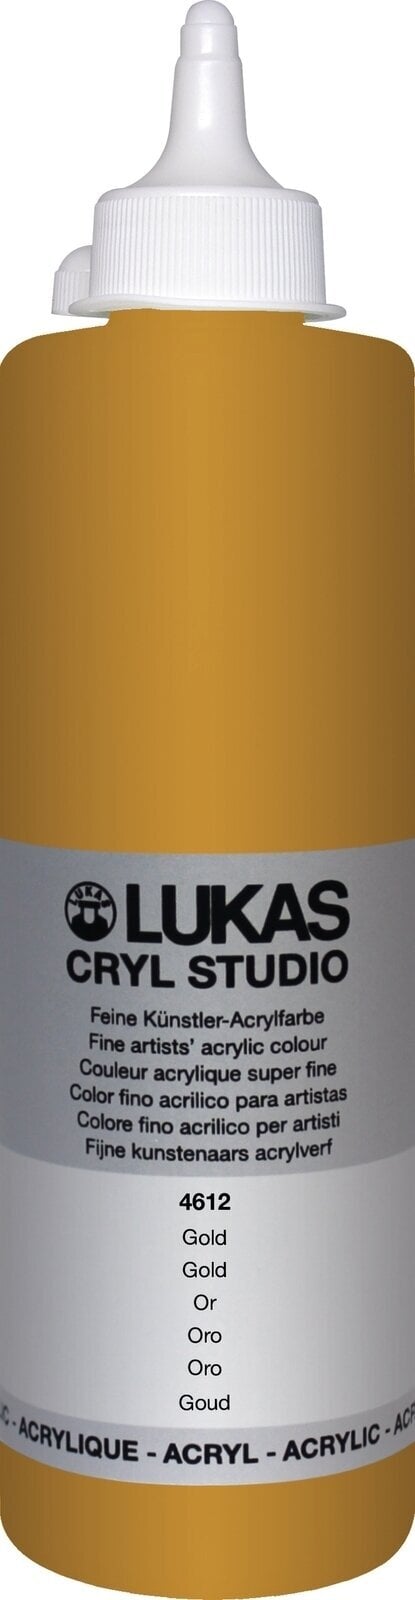 Peinture acrylique Lukas Cryl Studio Acrylic Paint Plastic Bottle Peinture acrylique Gold 500 ml 1 pc